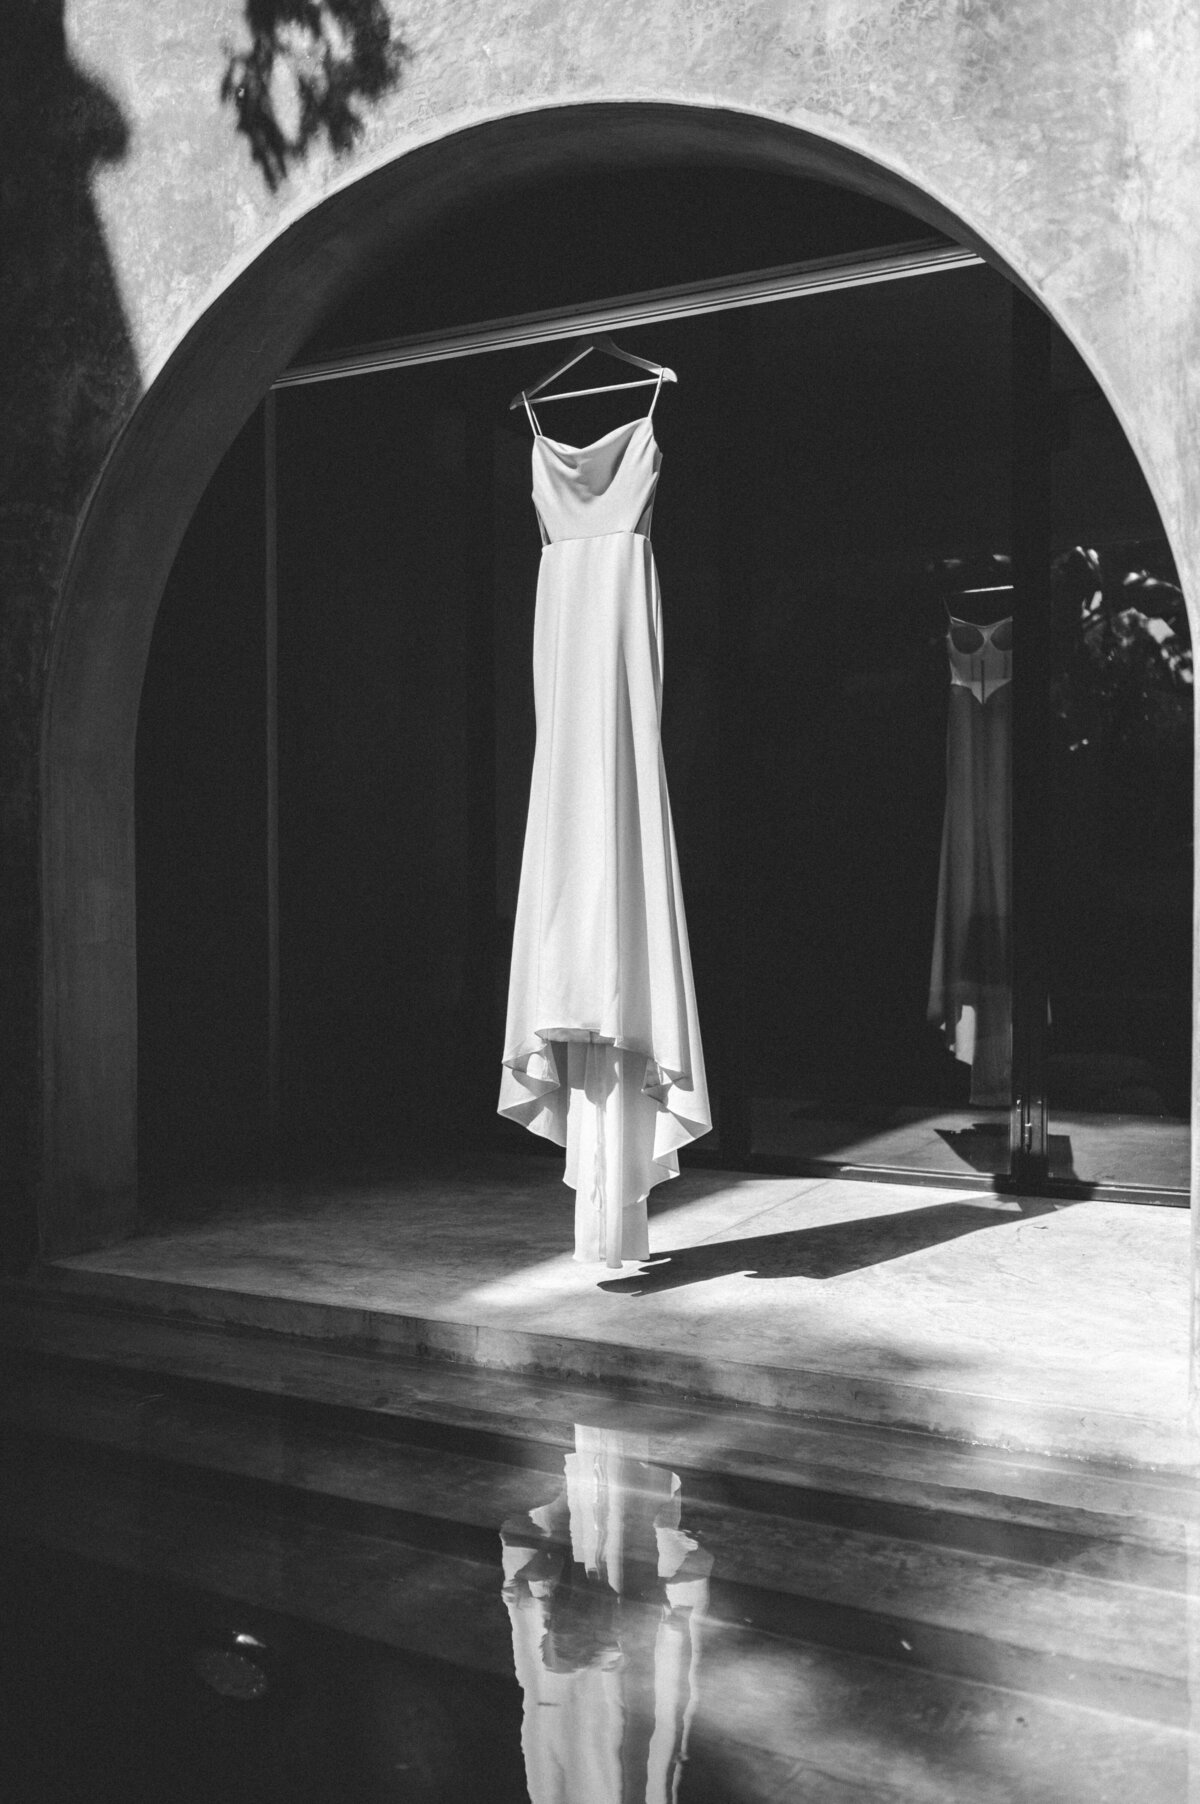 Reine Gown by Casablanca Bridal hung in arch way in Tulum wedding villa.